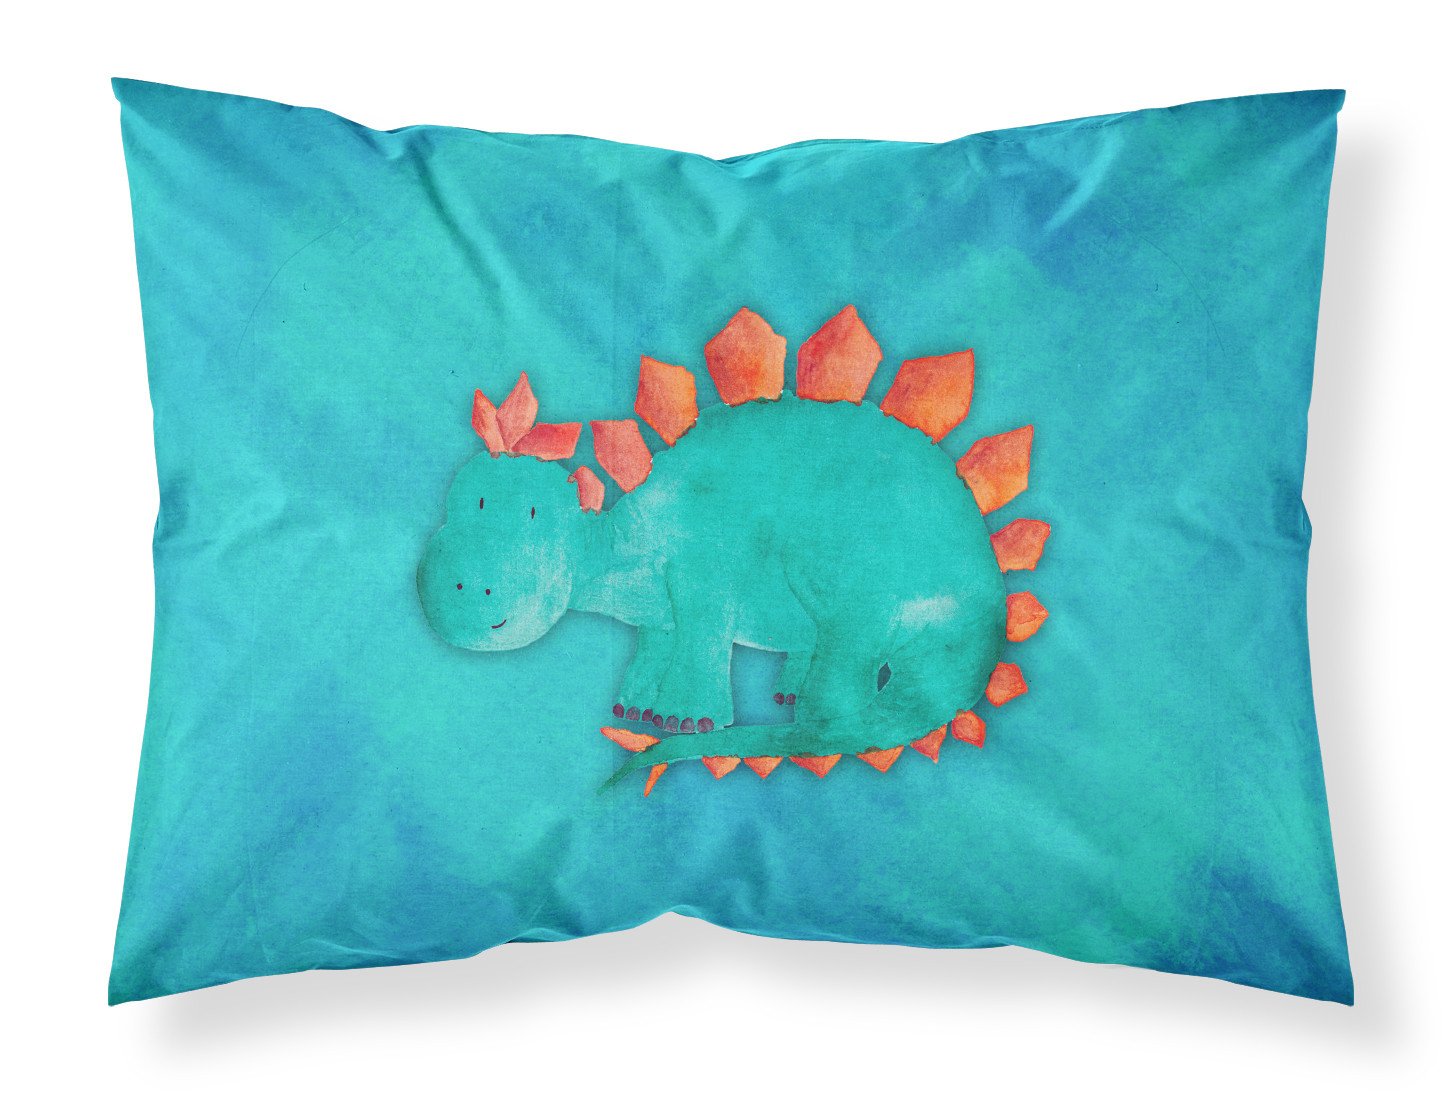 Stegosaurus Watercolor Fabric Standard Pillowcase BB7399PILLOWCASE by Caroline's Treasures